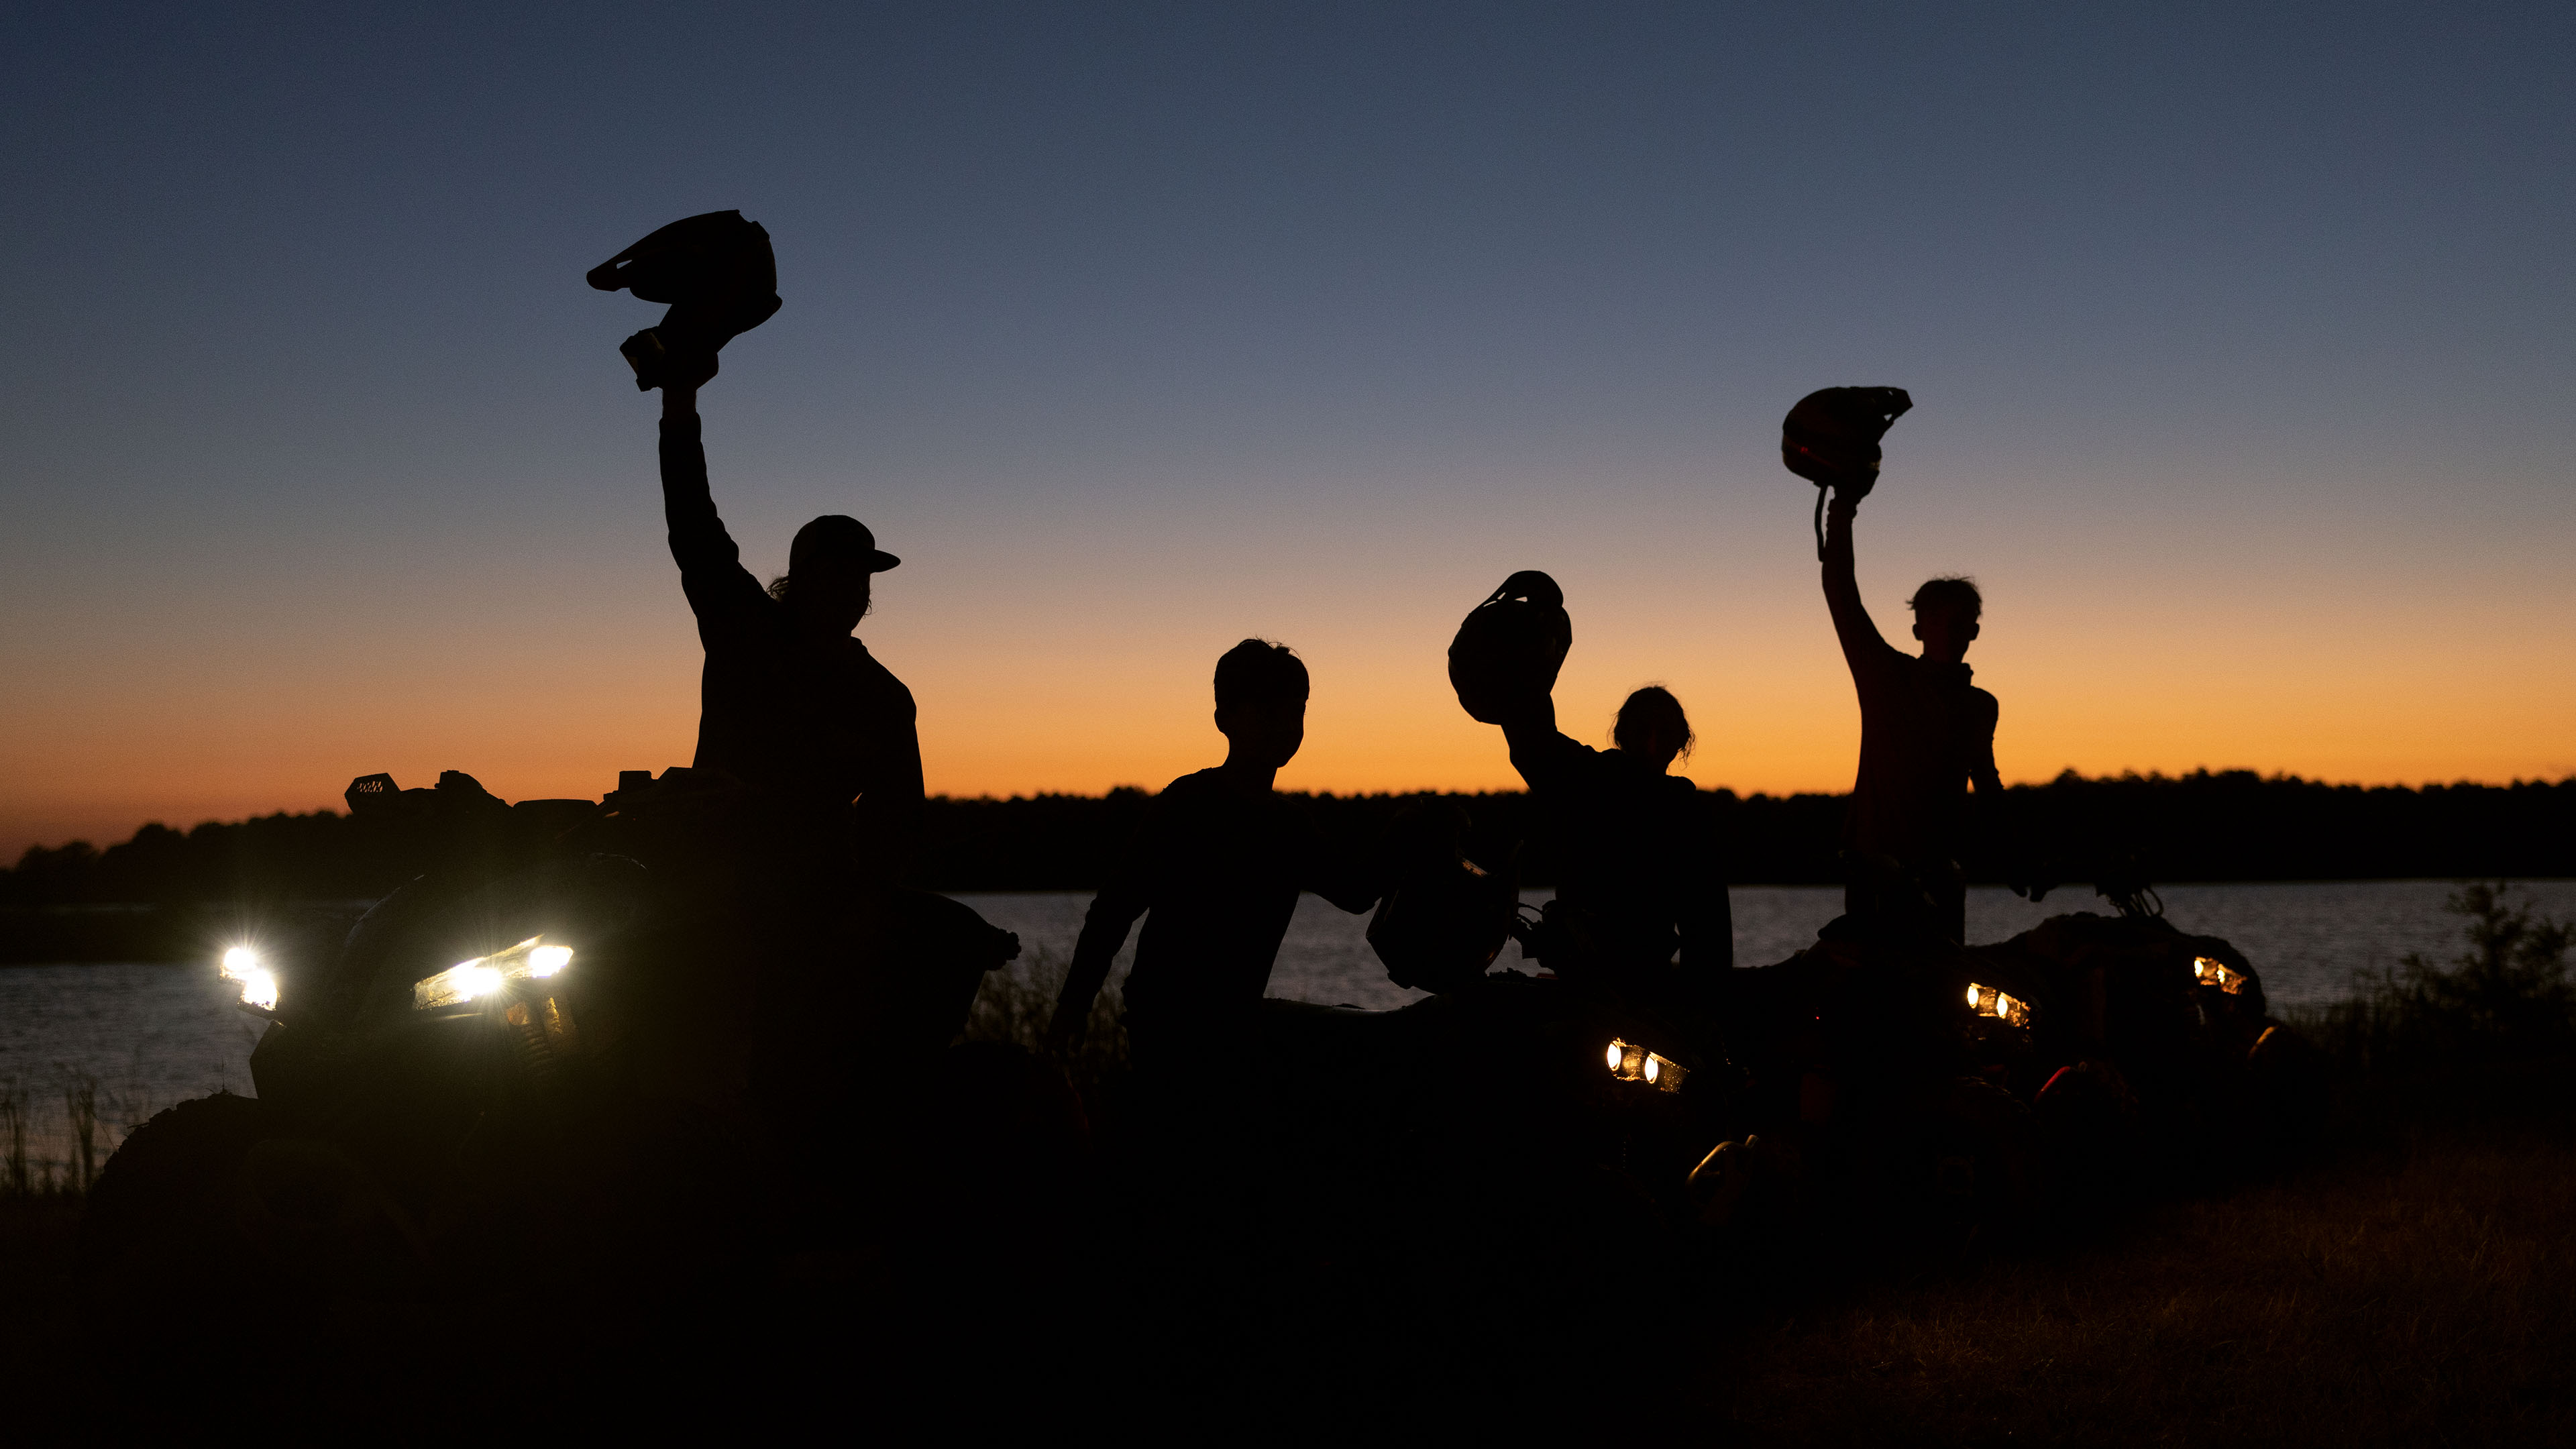 Des motards célébrant sur un UTV en regardant le coucher de soleil.